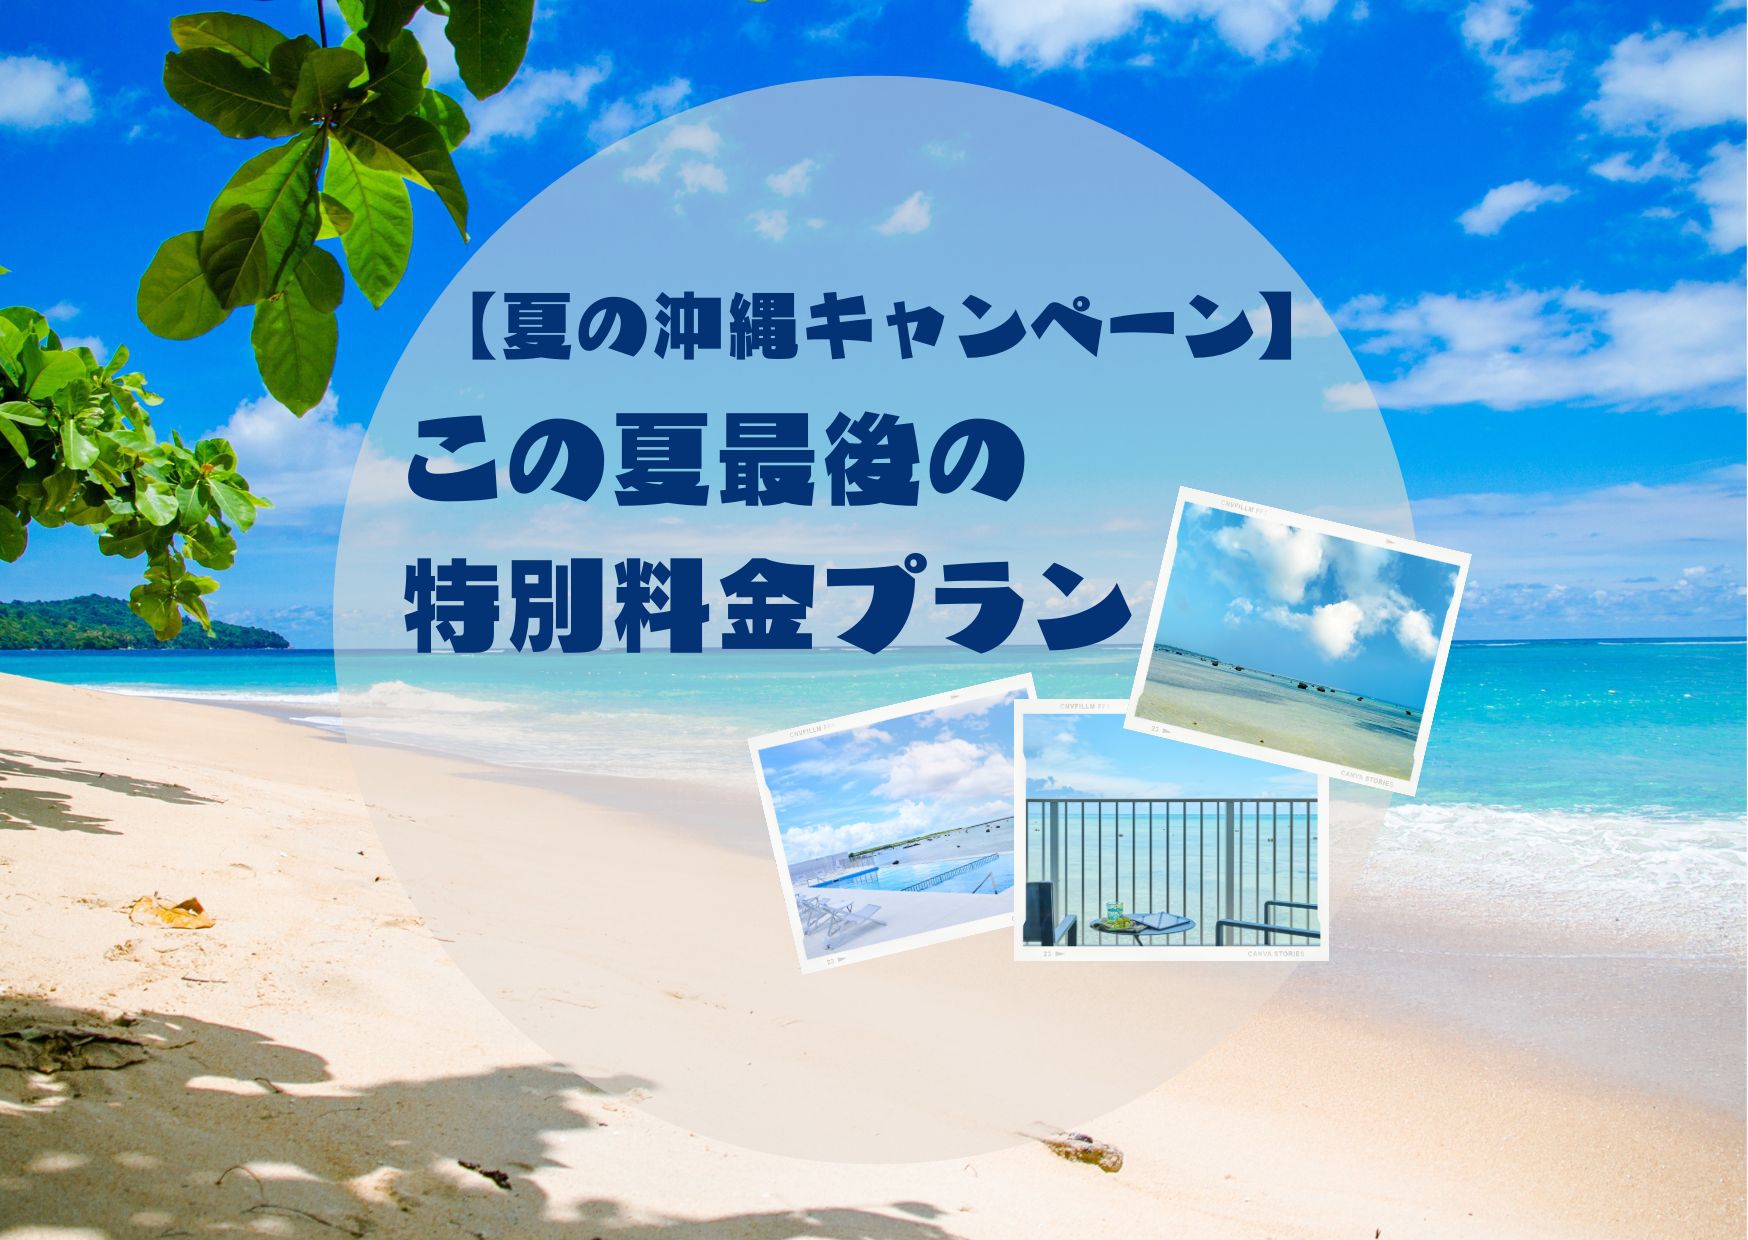 【夏の沖縄キャンペーン】この夏最後の特別料金プラン♪【食事なし】